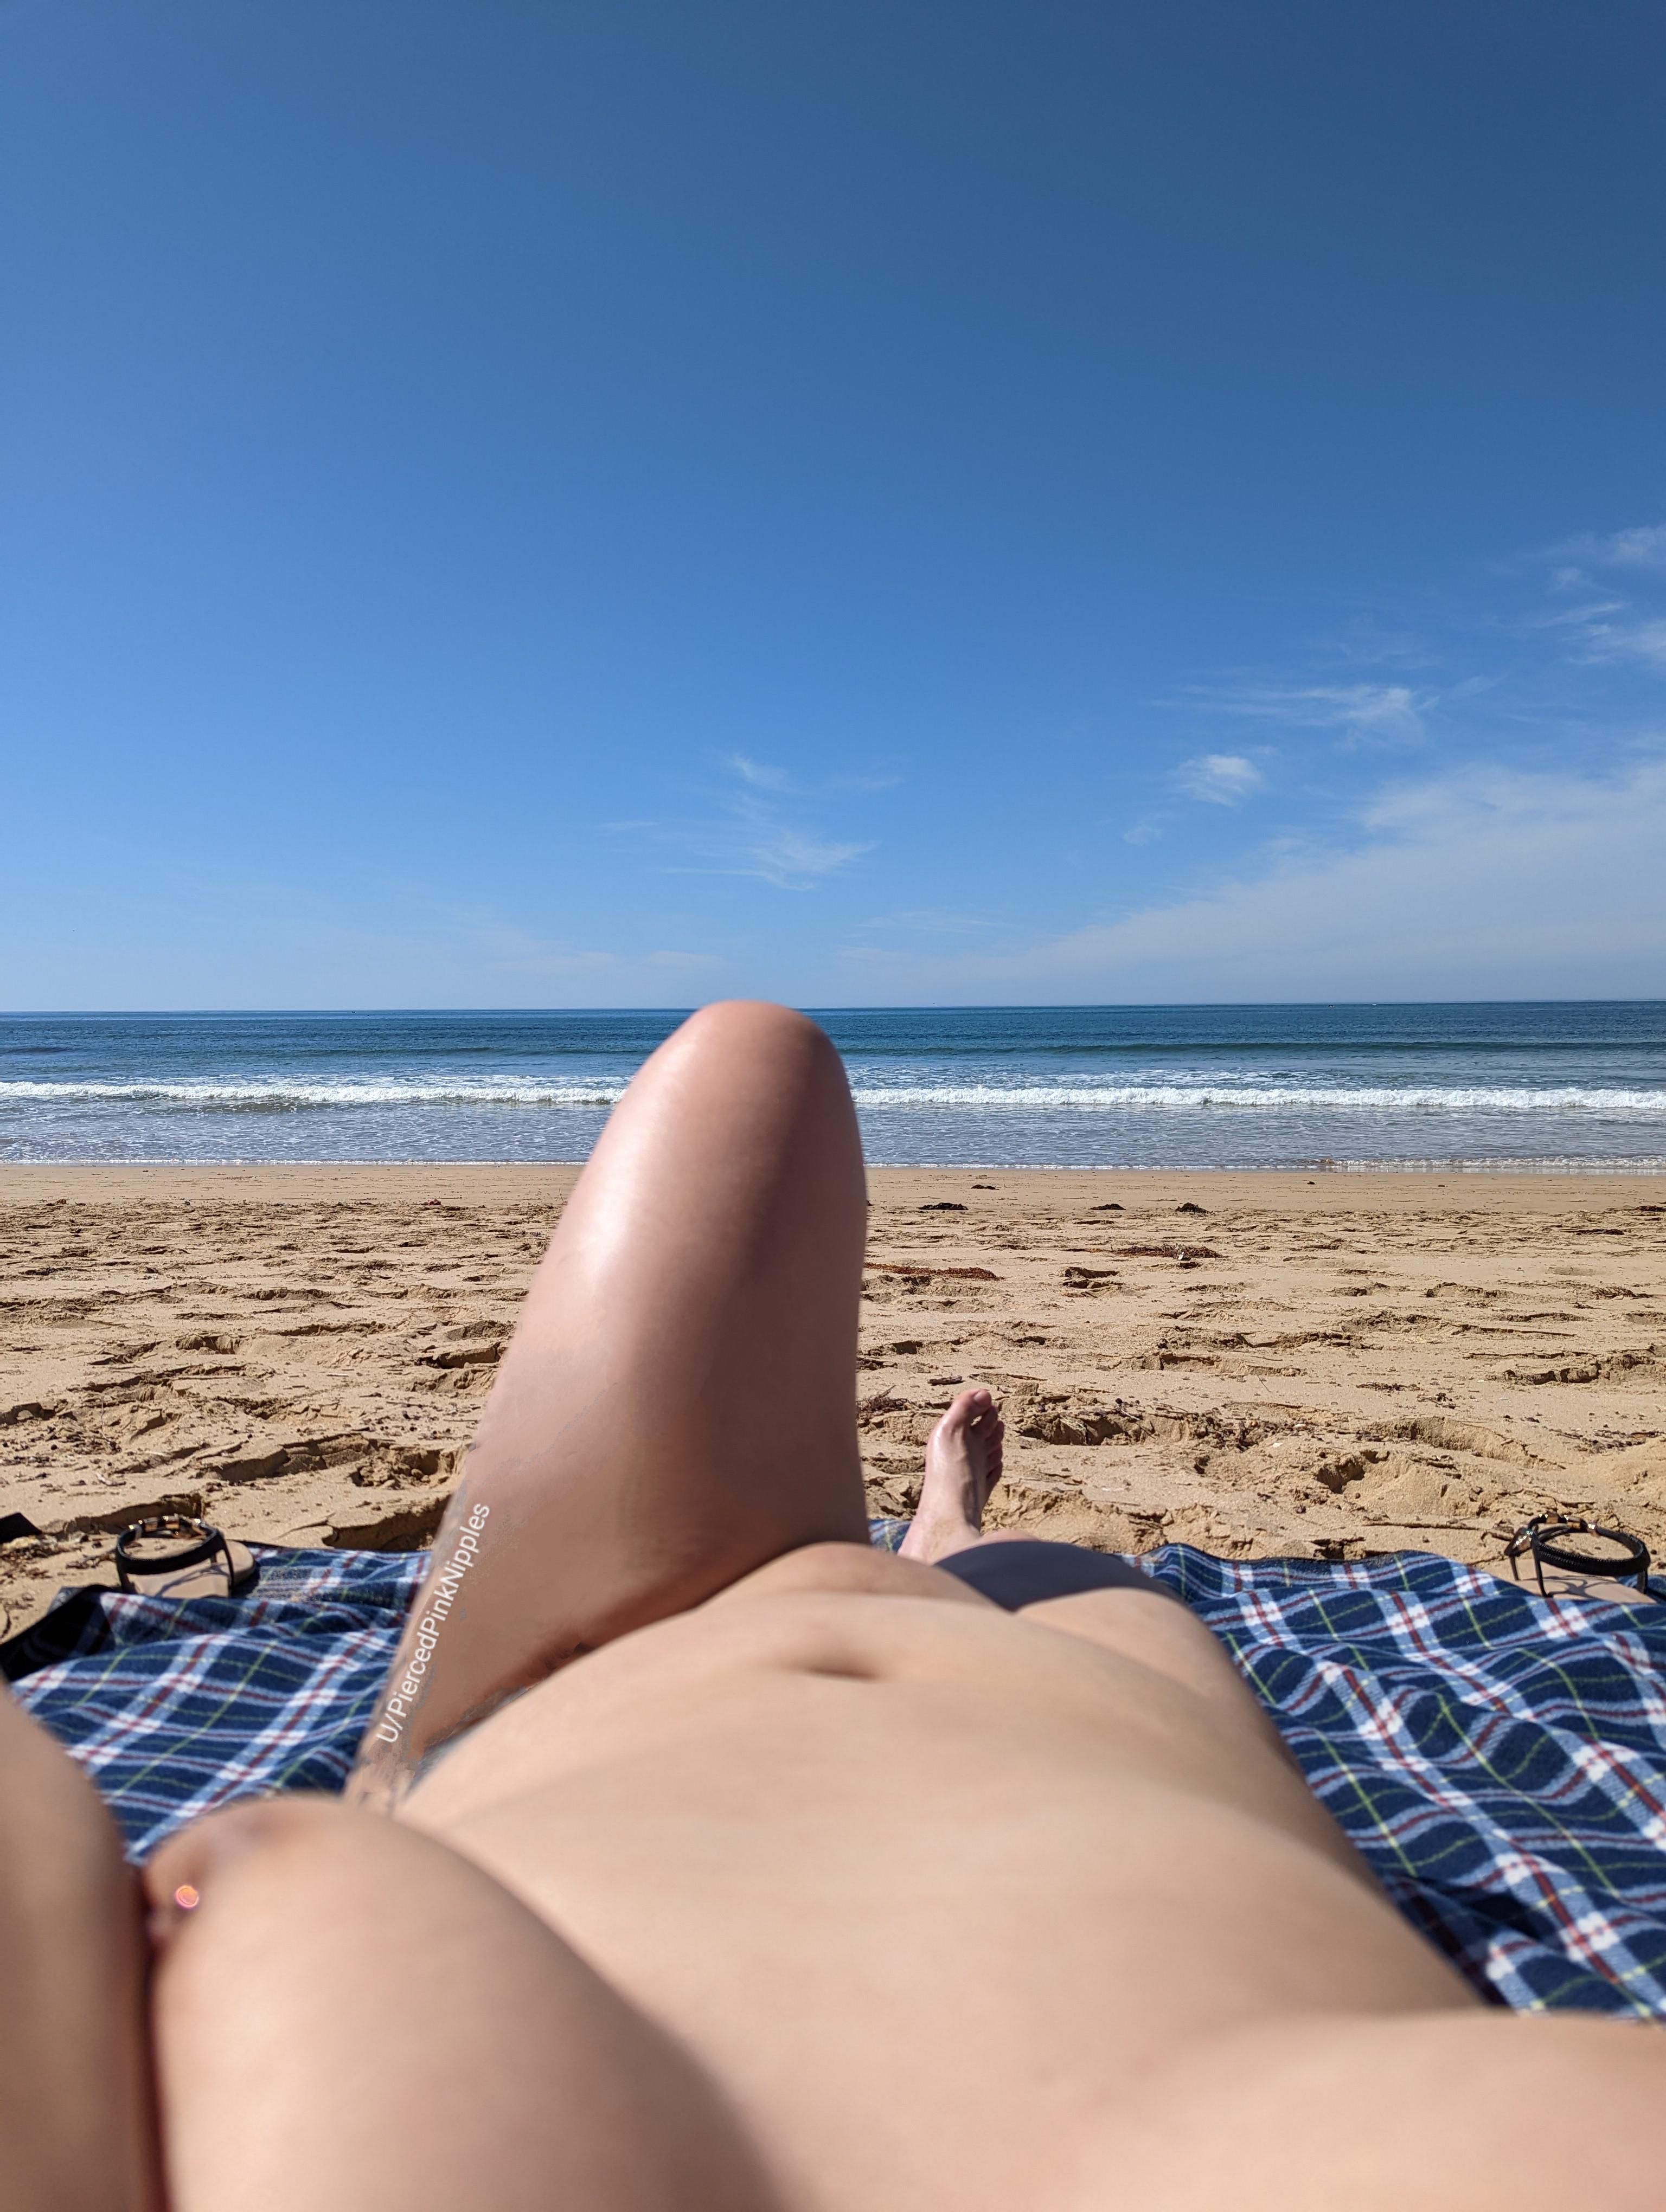 Adoro la spiaggia per nudisti, ma avrei voluto che ci fossero più donne con cui divertirsi